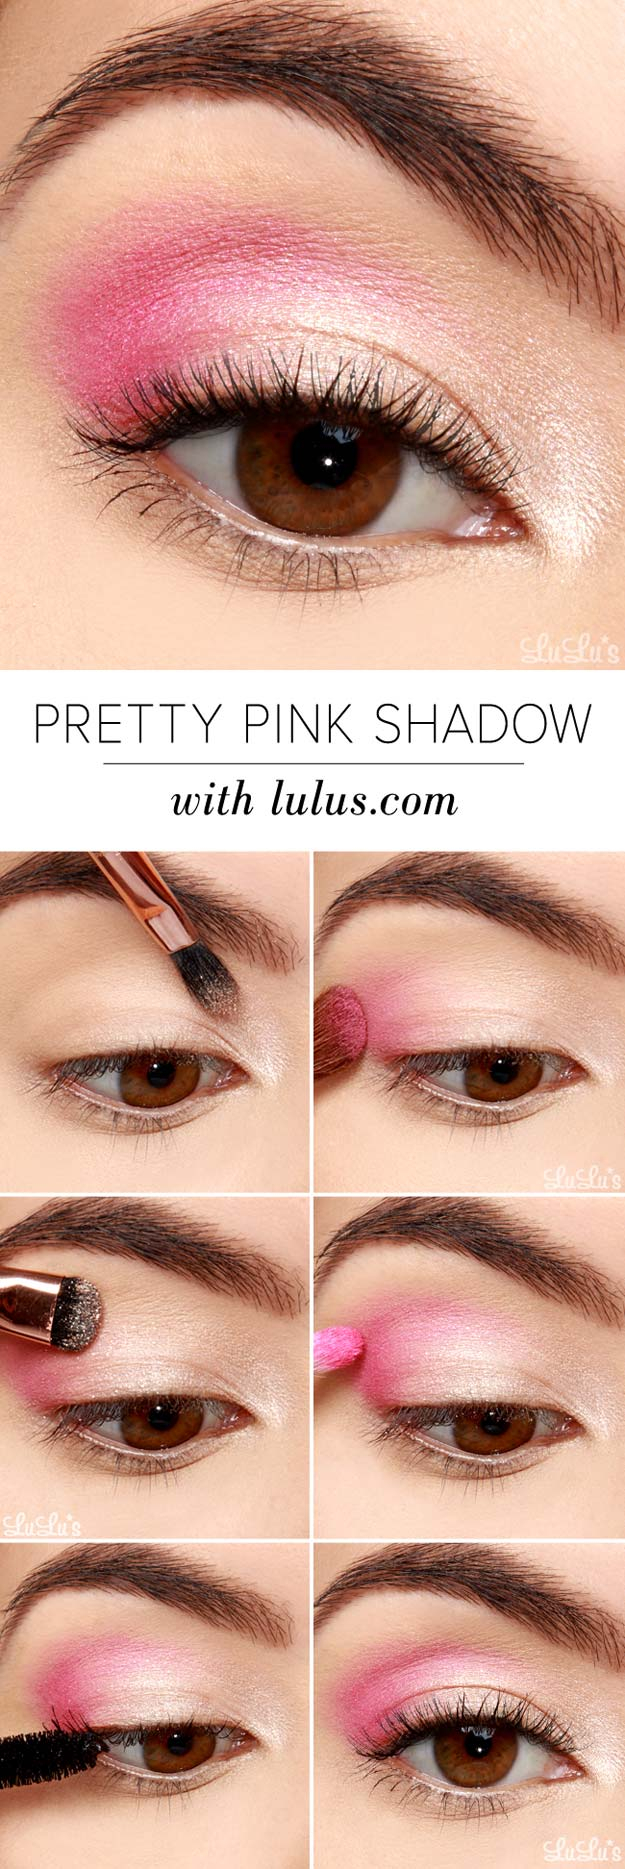 Pink Eye Makeup 25 Best Eyeshadow Tutorials Ever Created